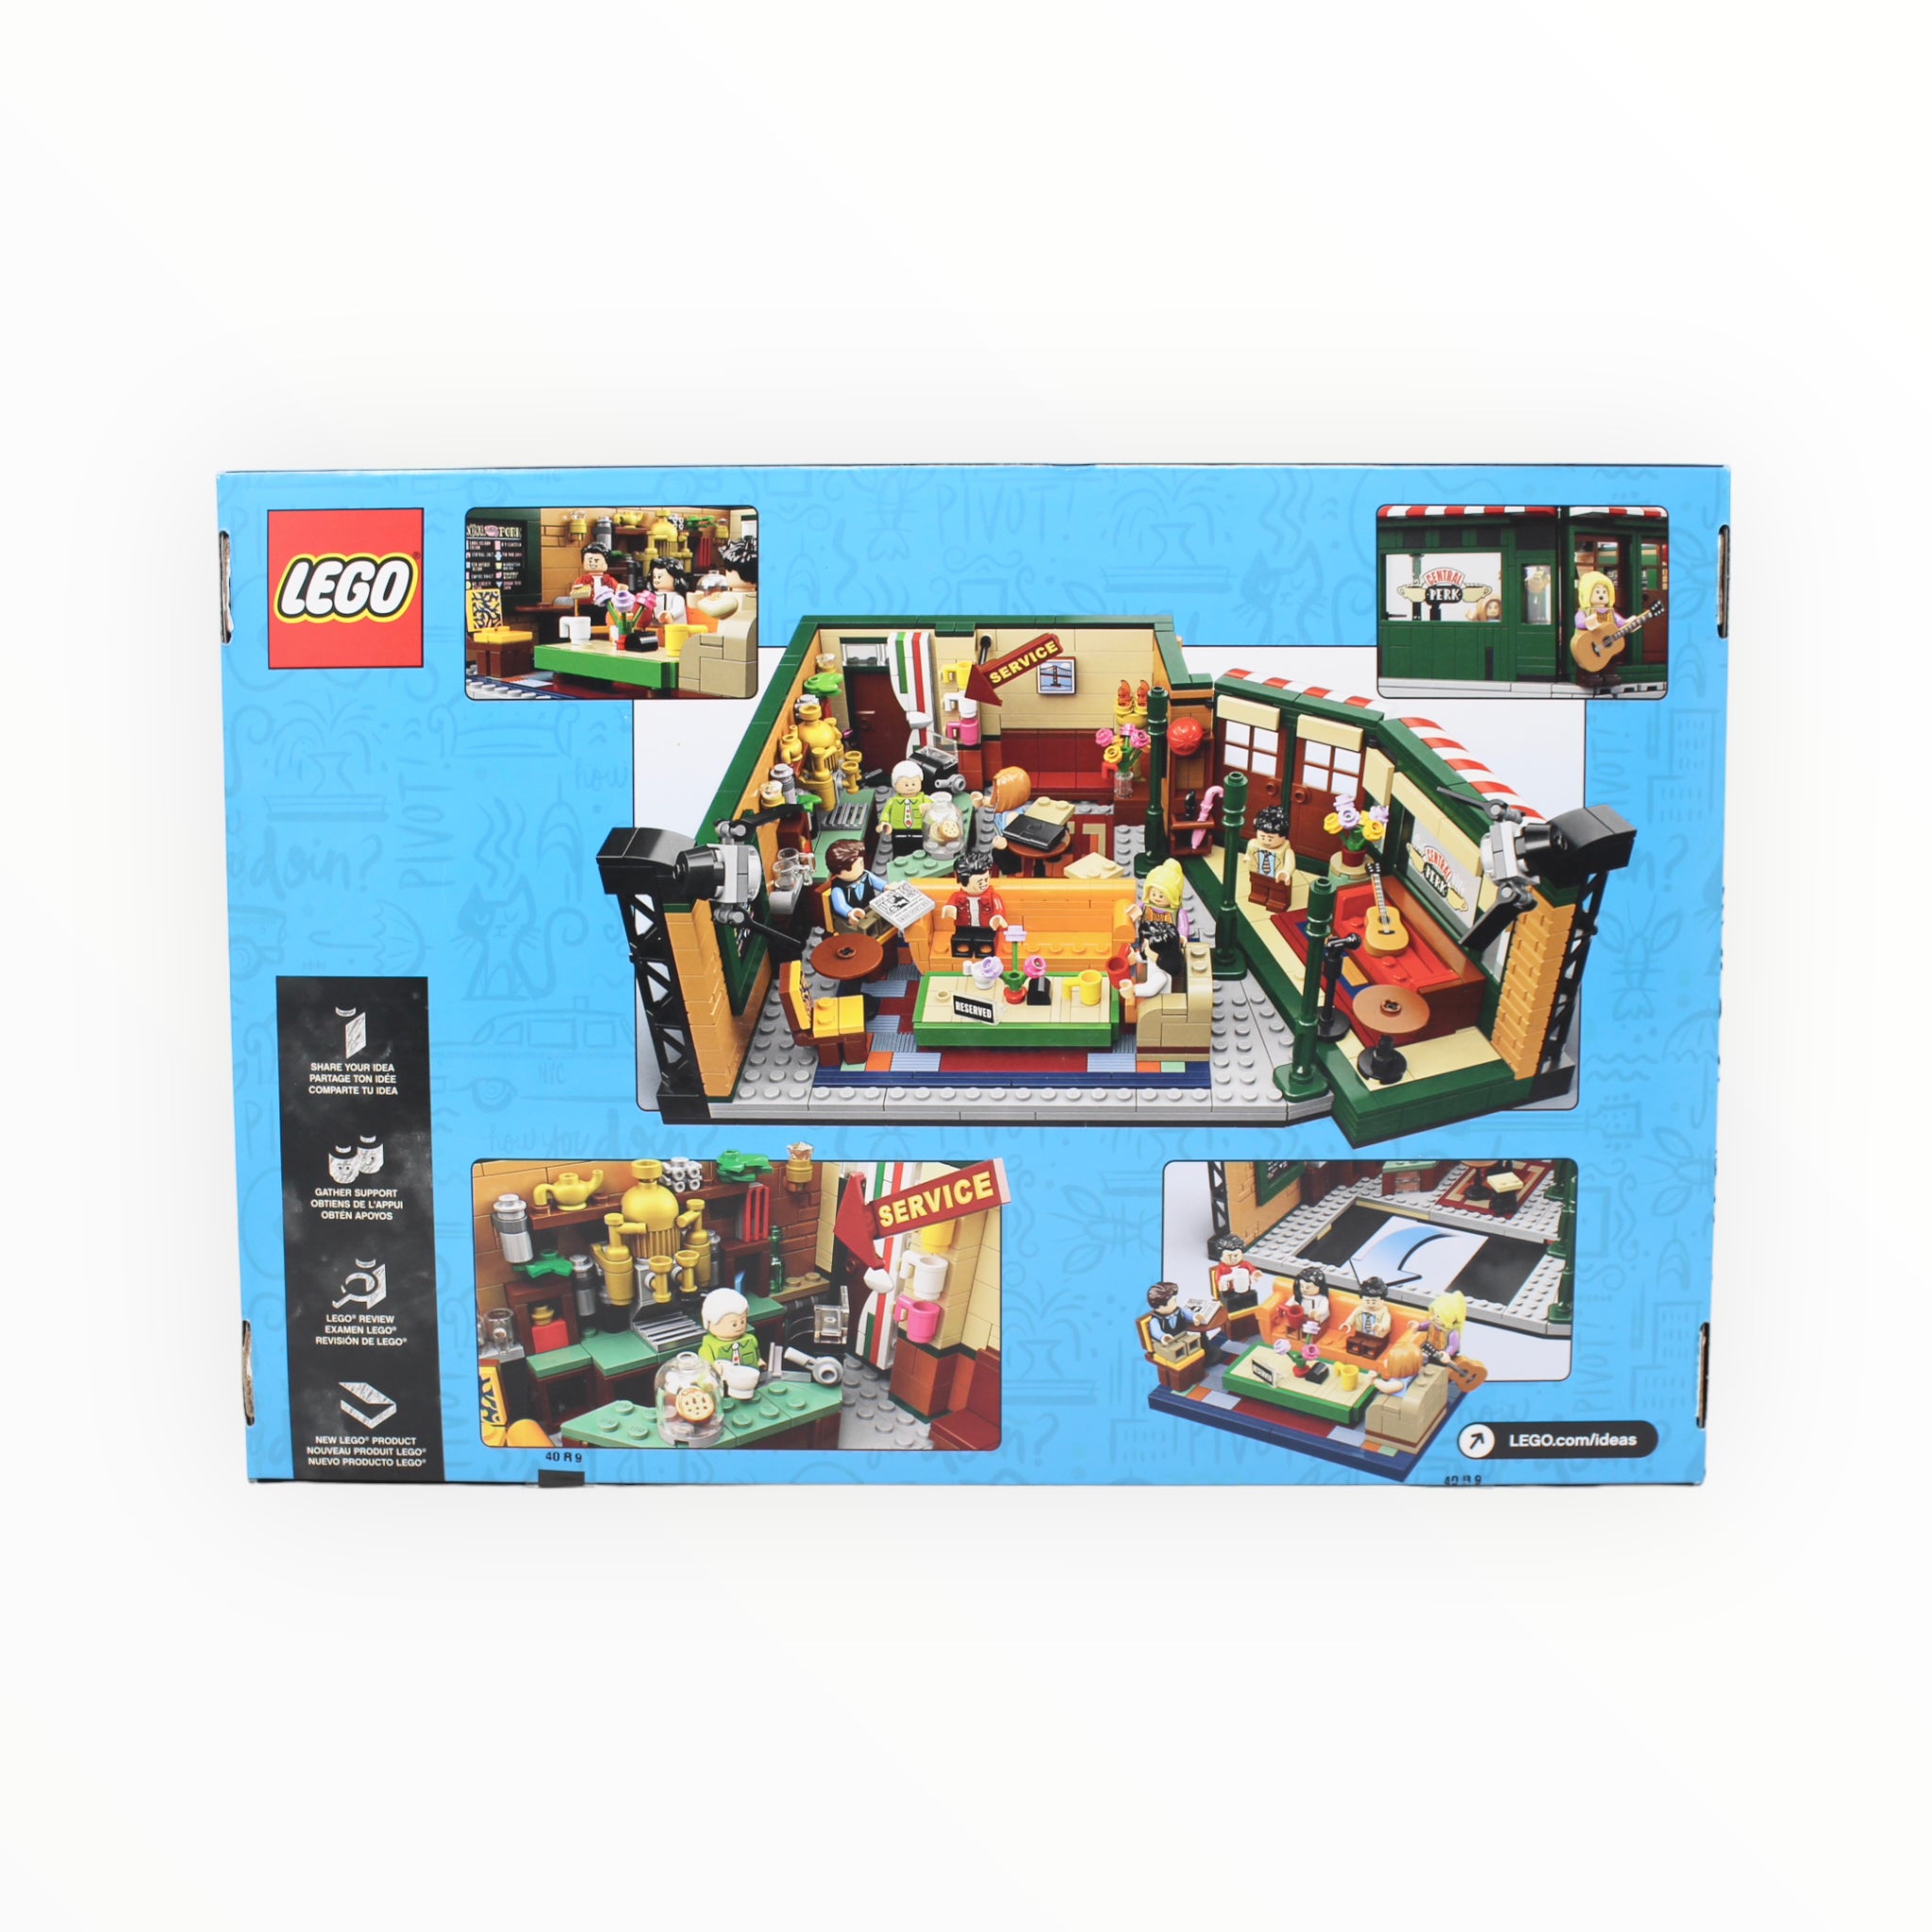 Retired Set 21319 LEGO Ideas F.R.I.E.N.D.S Central Perk